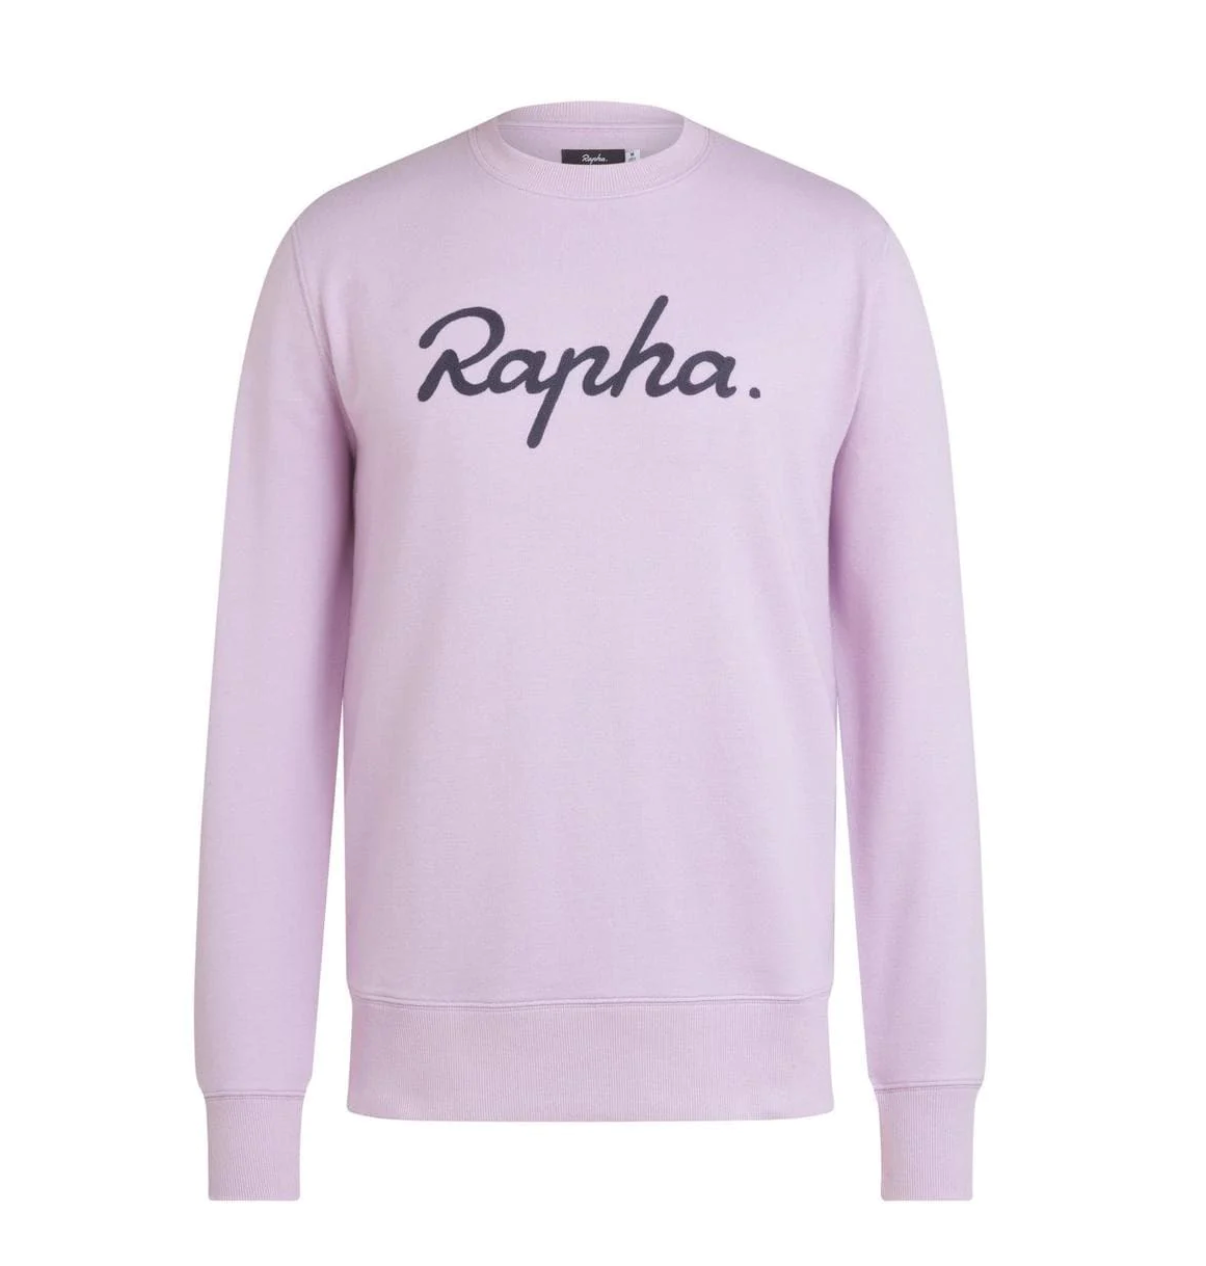 Rapha Women's Logo Sweatshirt